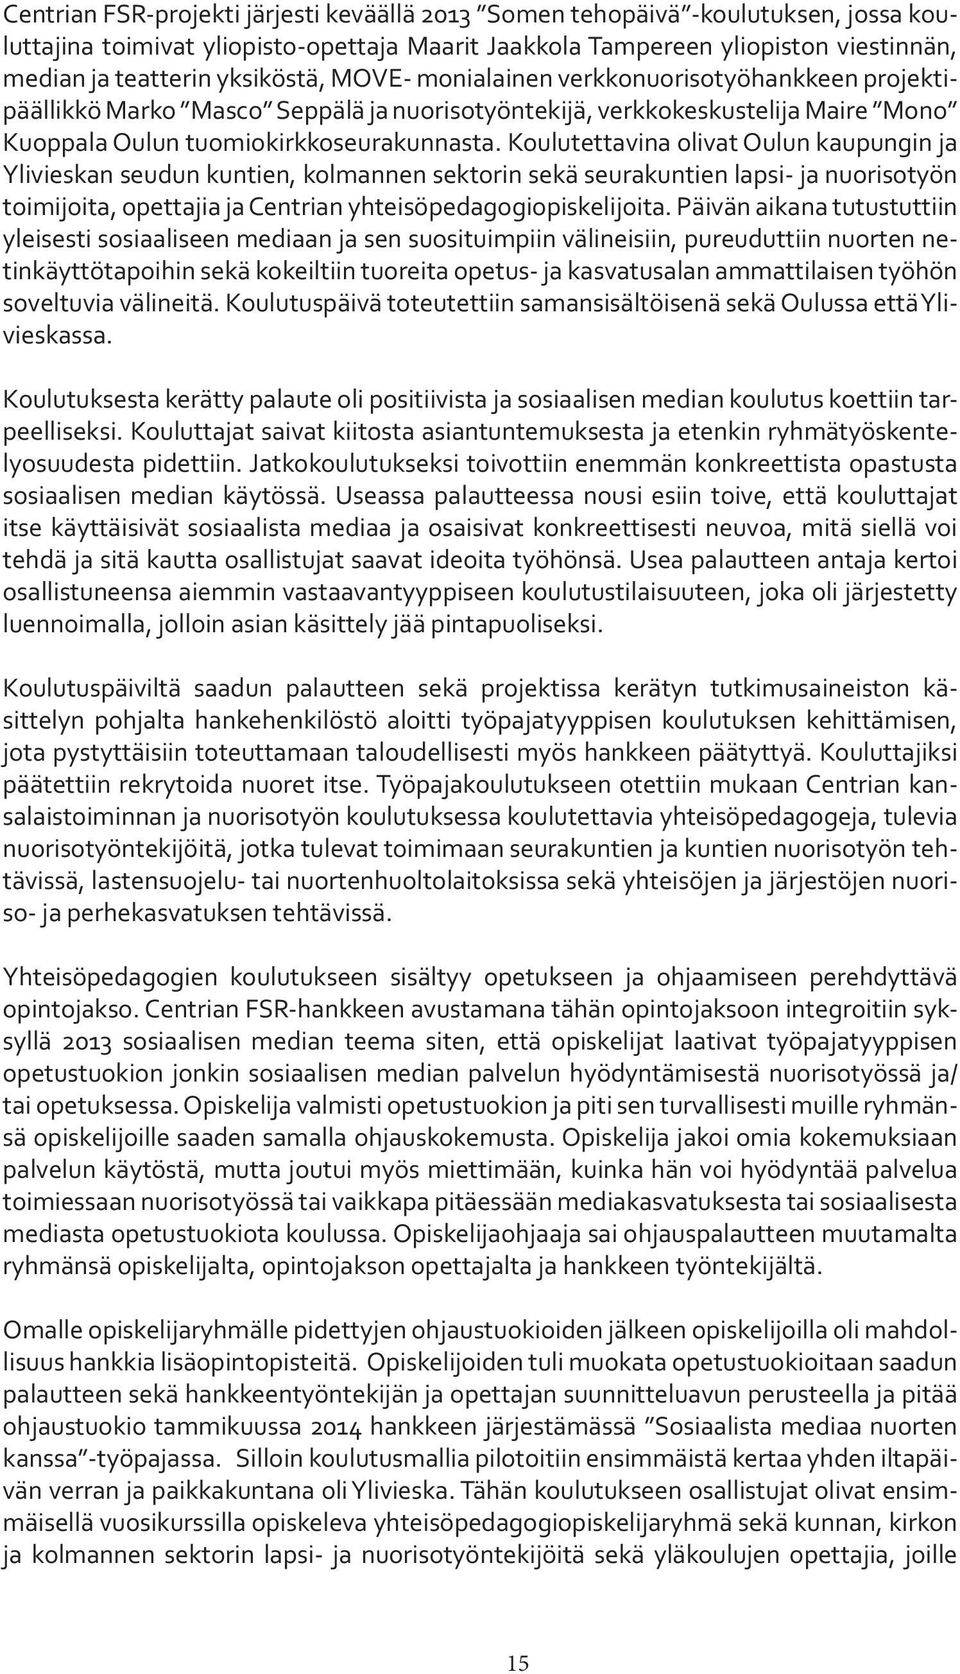 Koulutettavina olivat Oulun kaupungin ja Ylivieskan seudun kuntien, kolmannen sektorin sekä seurakuntien lapsi- ja nuorisotyön toimijoita, opettajia ja Centrian yhteisöpedagogiopiskelijoita.